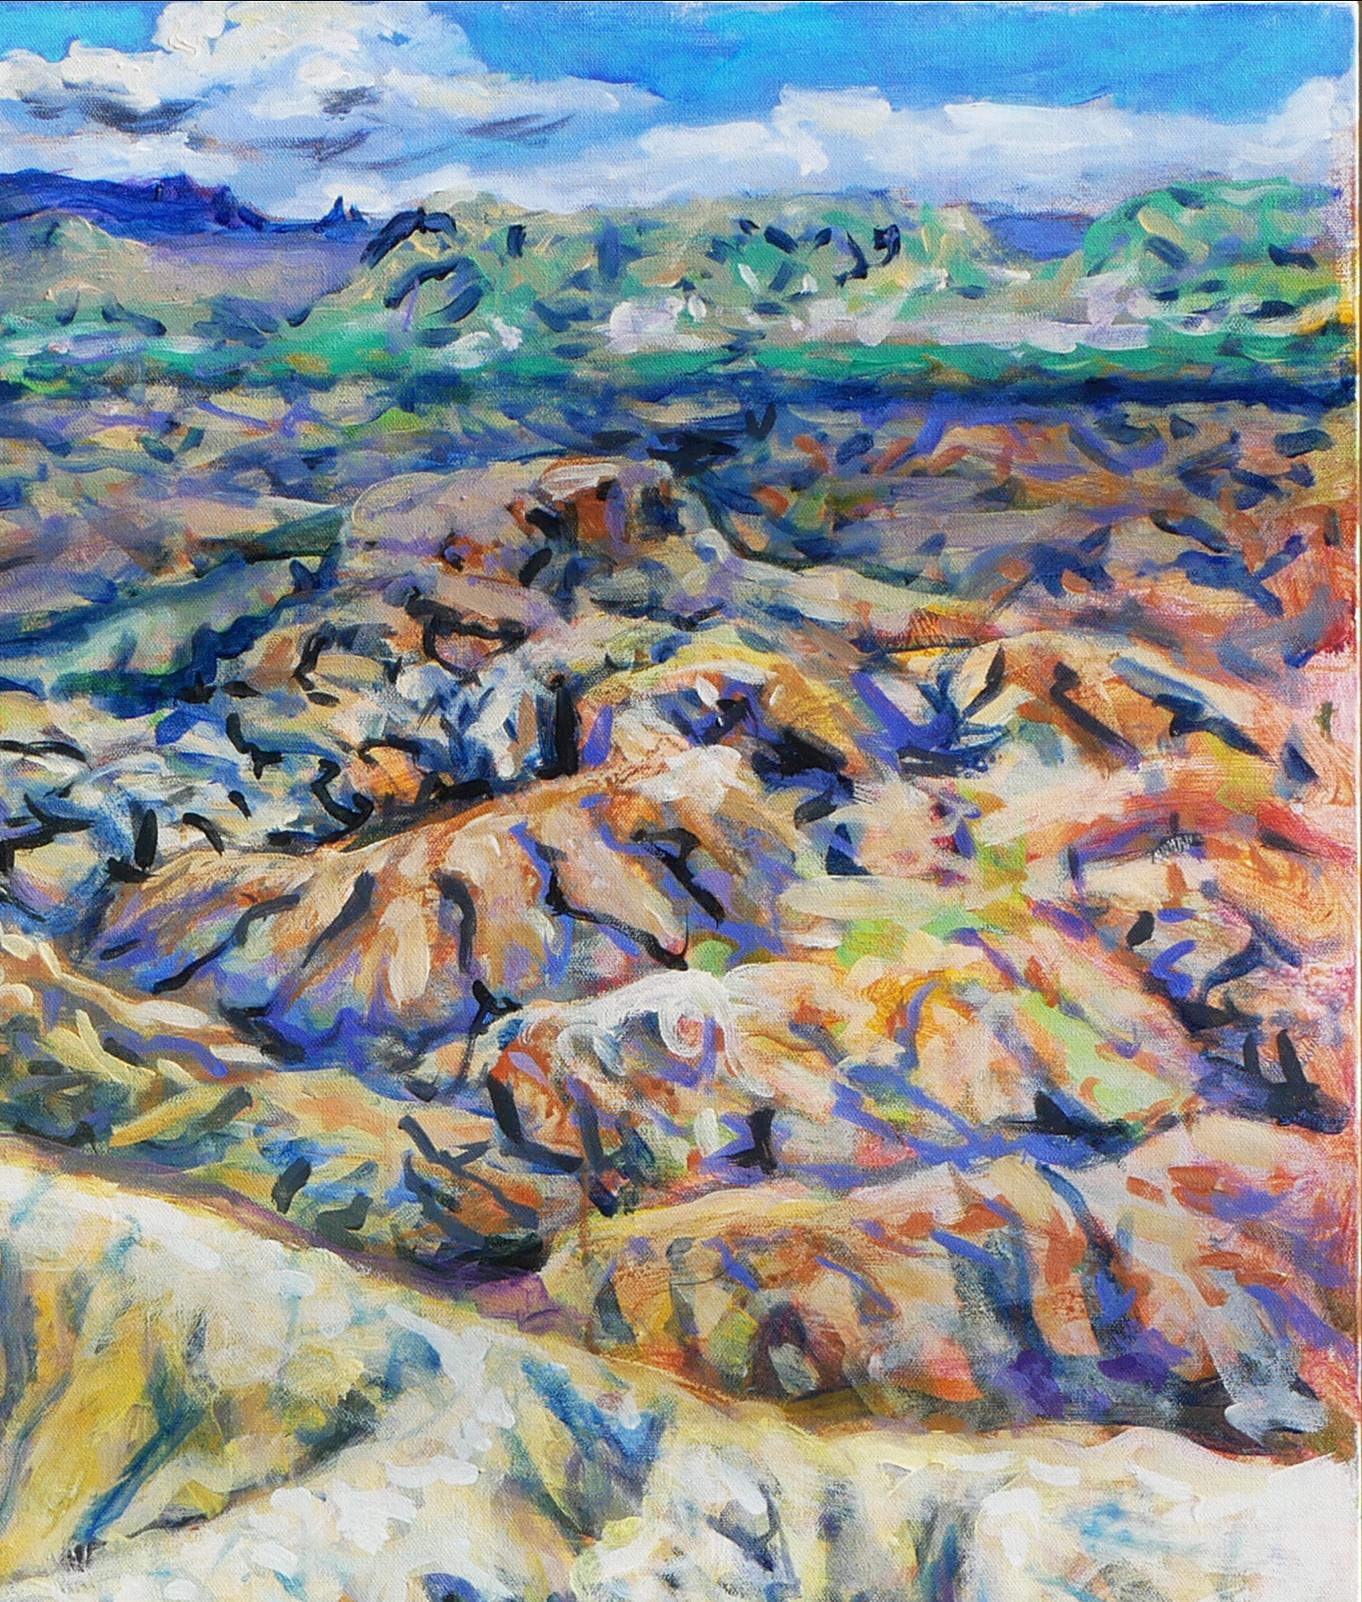 Paysage abstrait contemporain bleu, vert et jaune de l'artiste Earl Staley, de Houston, au Texas. La peinture représente une vue du magnifique Terlingua Canyon dans le parc national de Big Bend. Signé et daté par l'artiste dans le coin inférieur